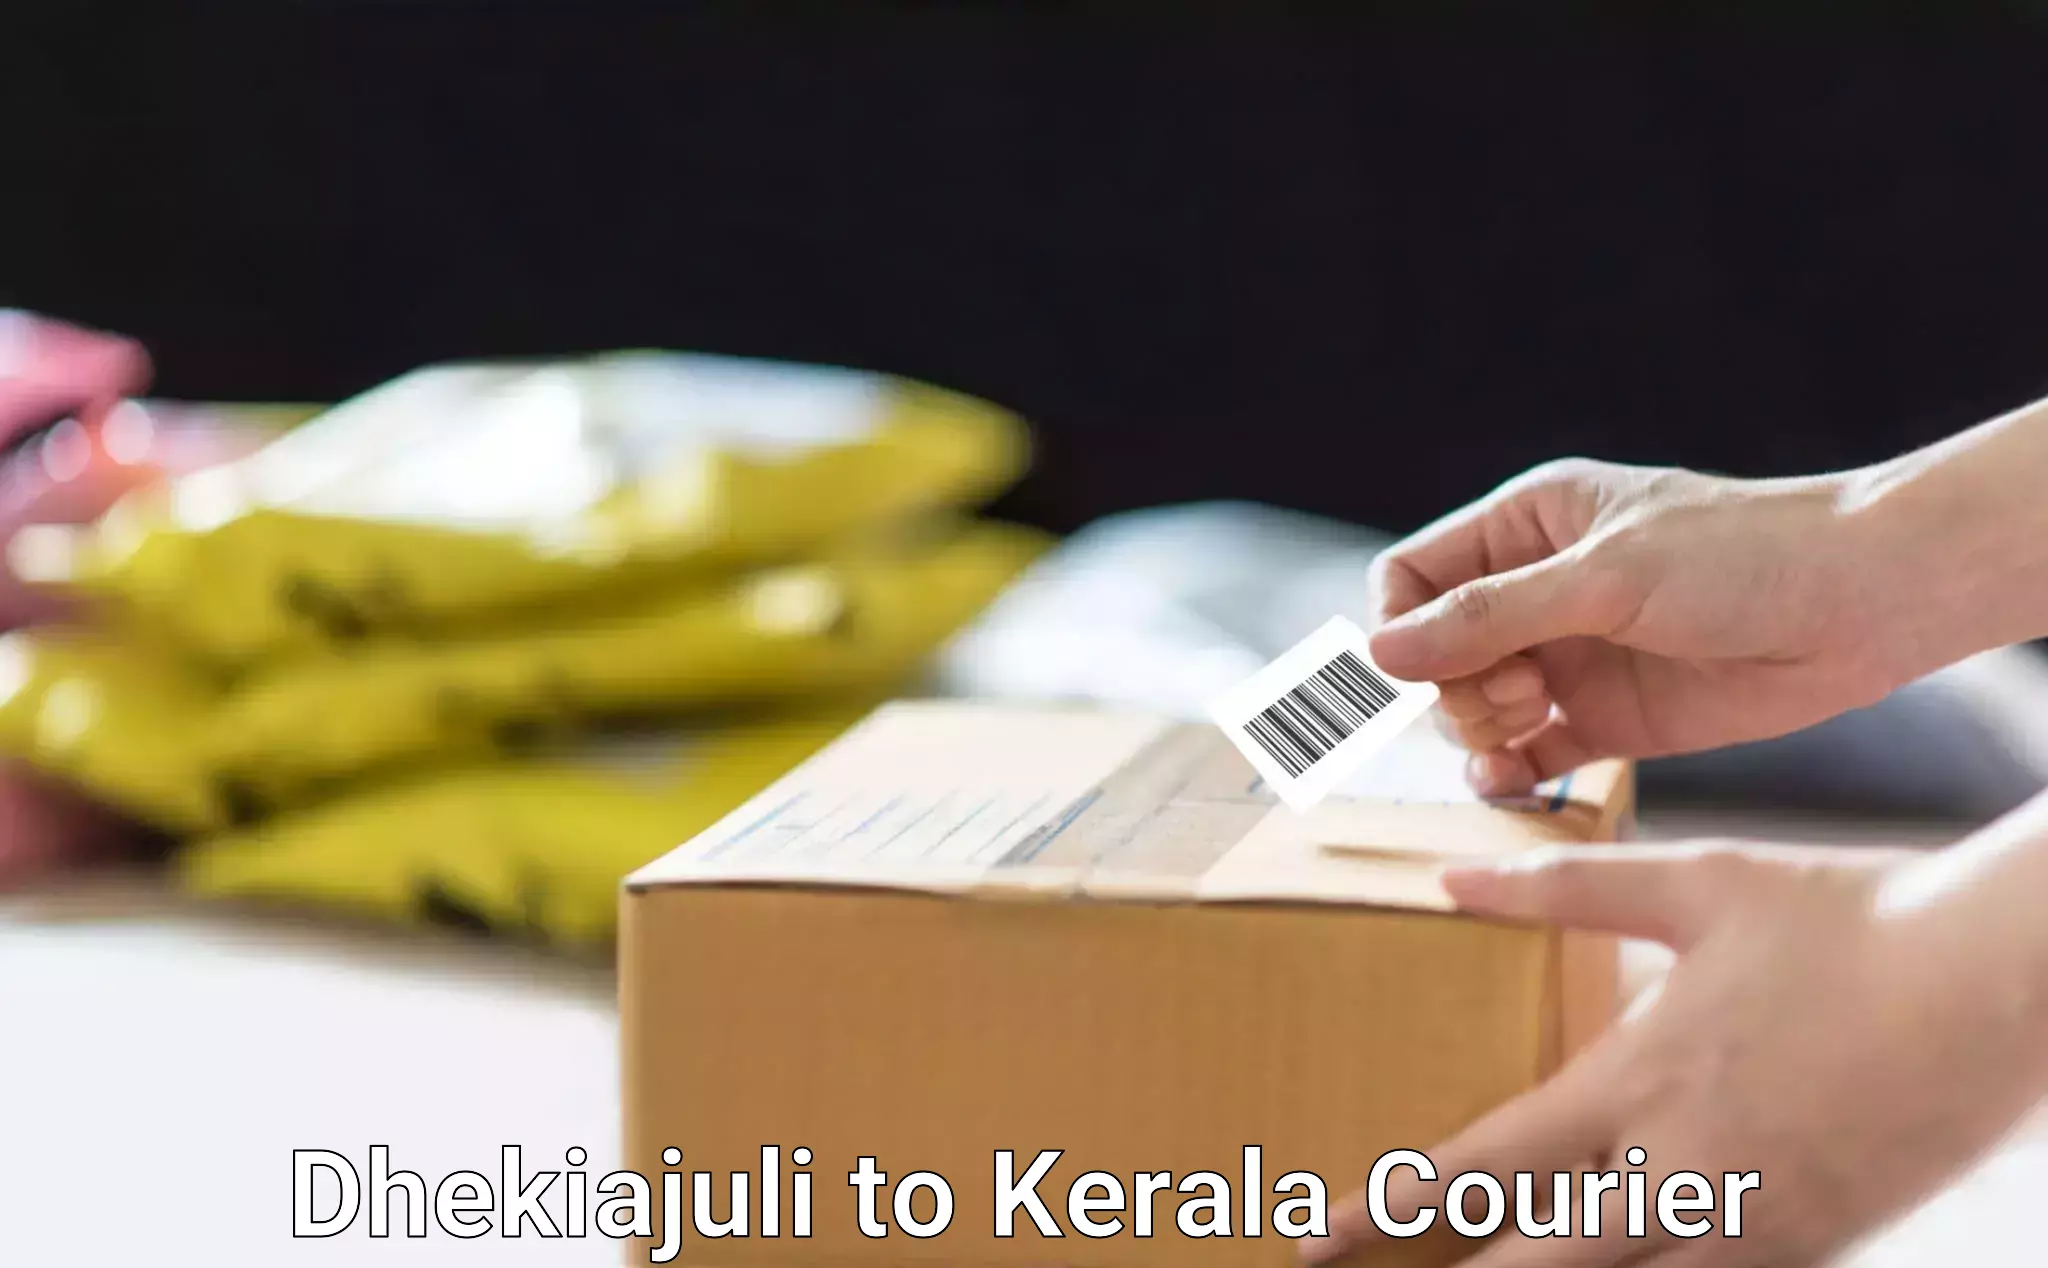 Premium courier services Dhekiajuli to Alappuzha